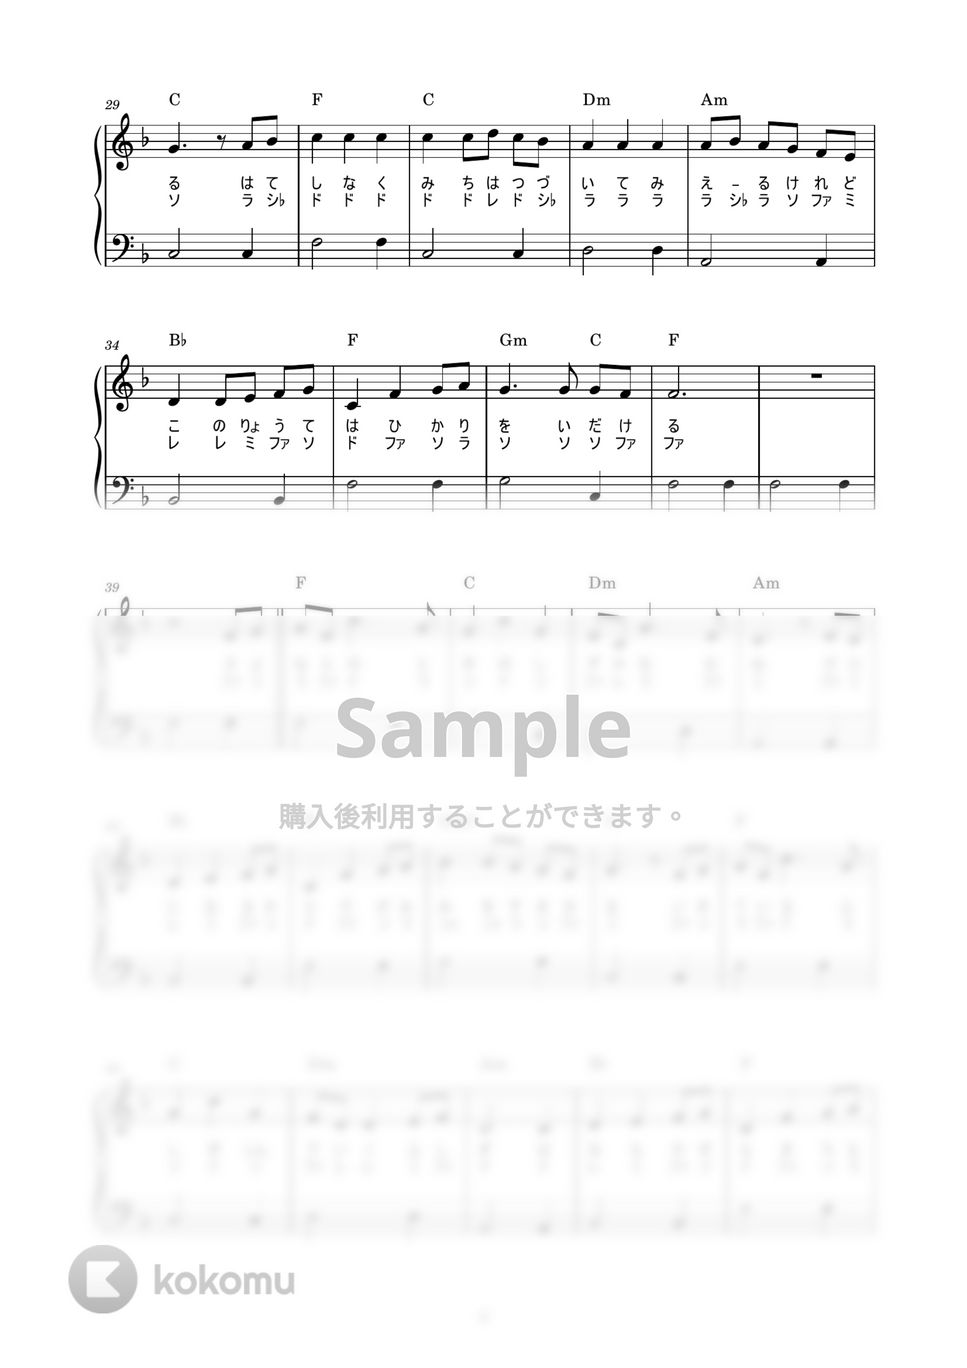 木村弓 - いつも何度でも (かんたん / 歌詞付き / ドレミ付き / 初心者) by piano.tokyo